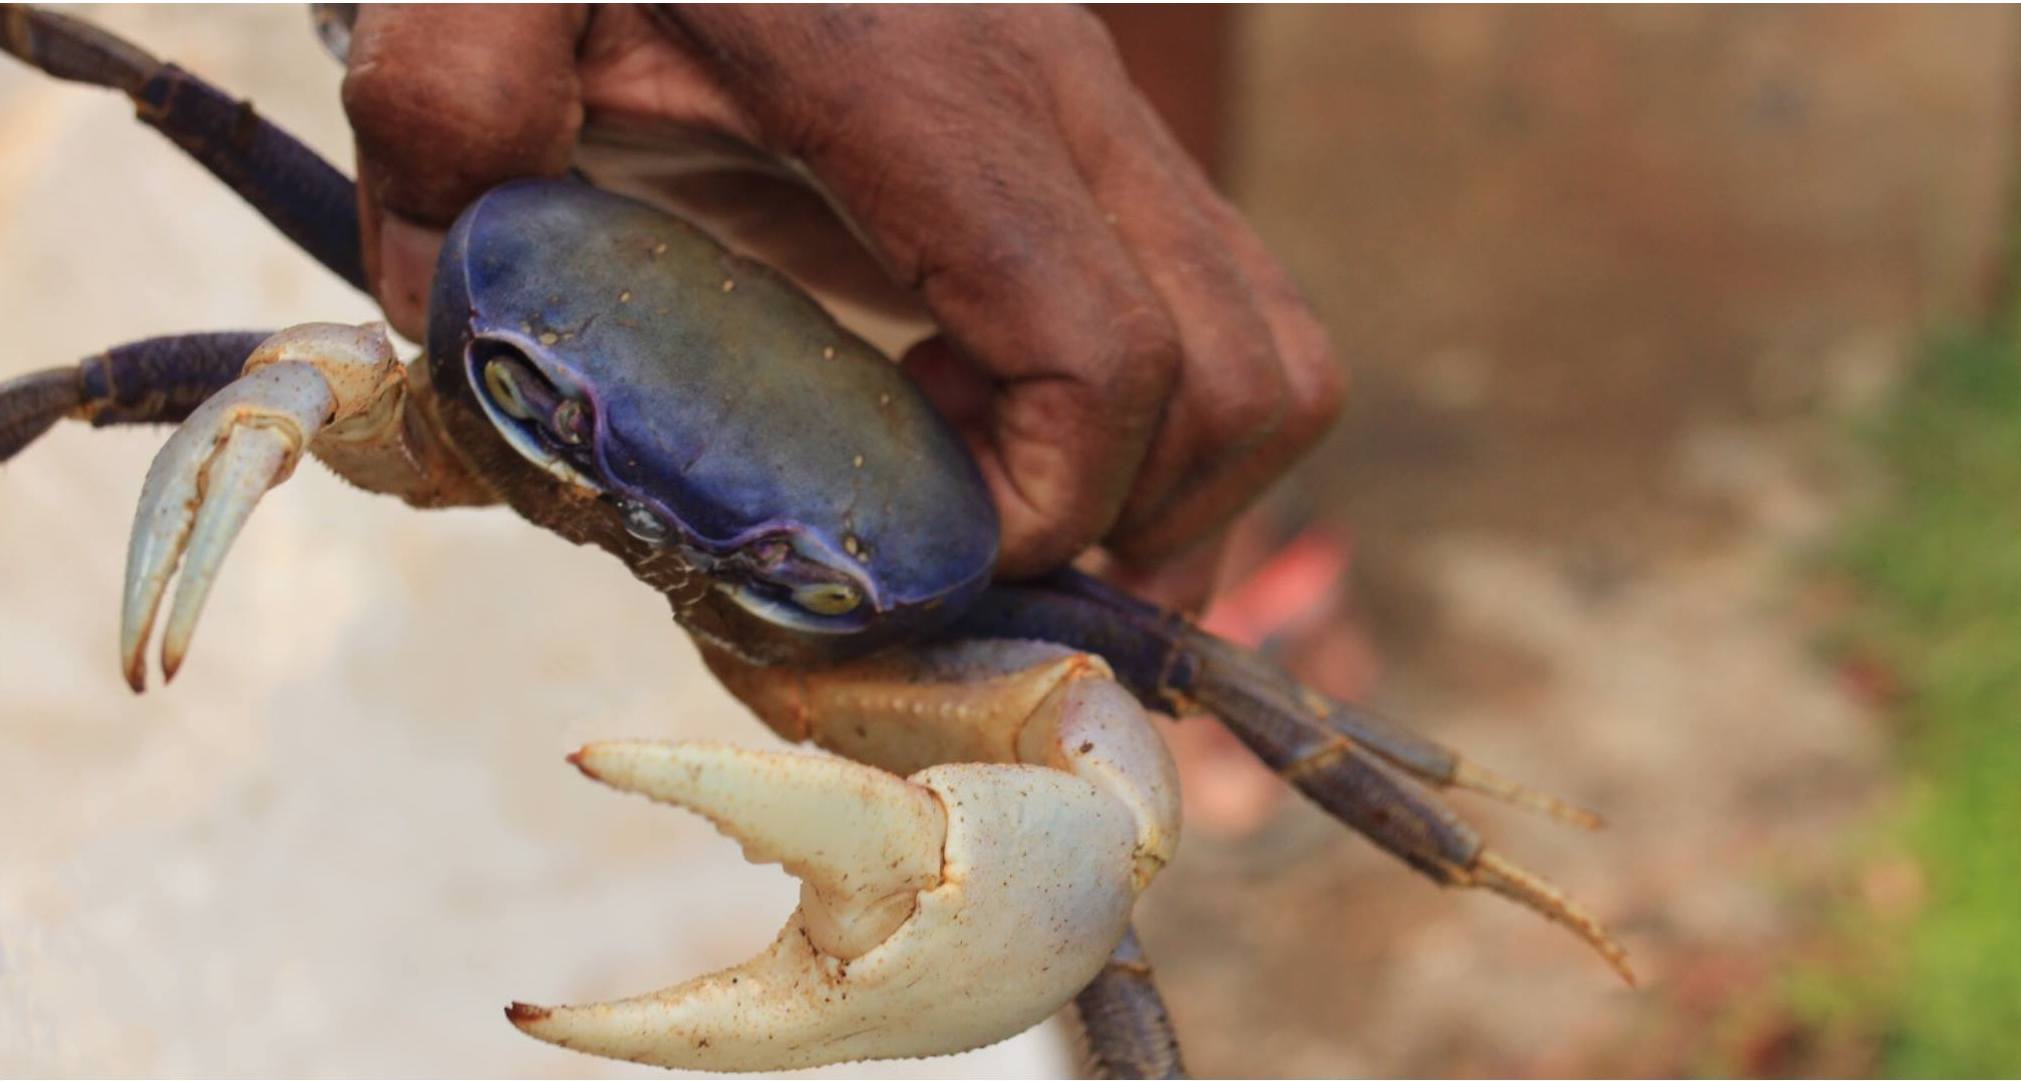     Un pêcheur de crabes retrouvé après avoir disparu à Port-Louis

